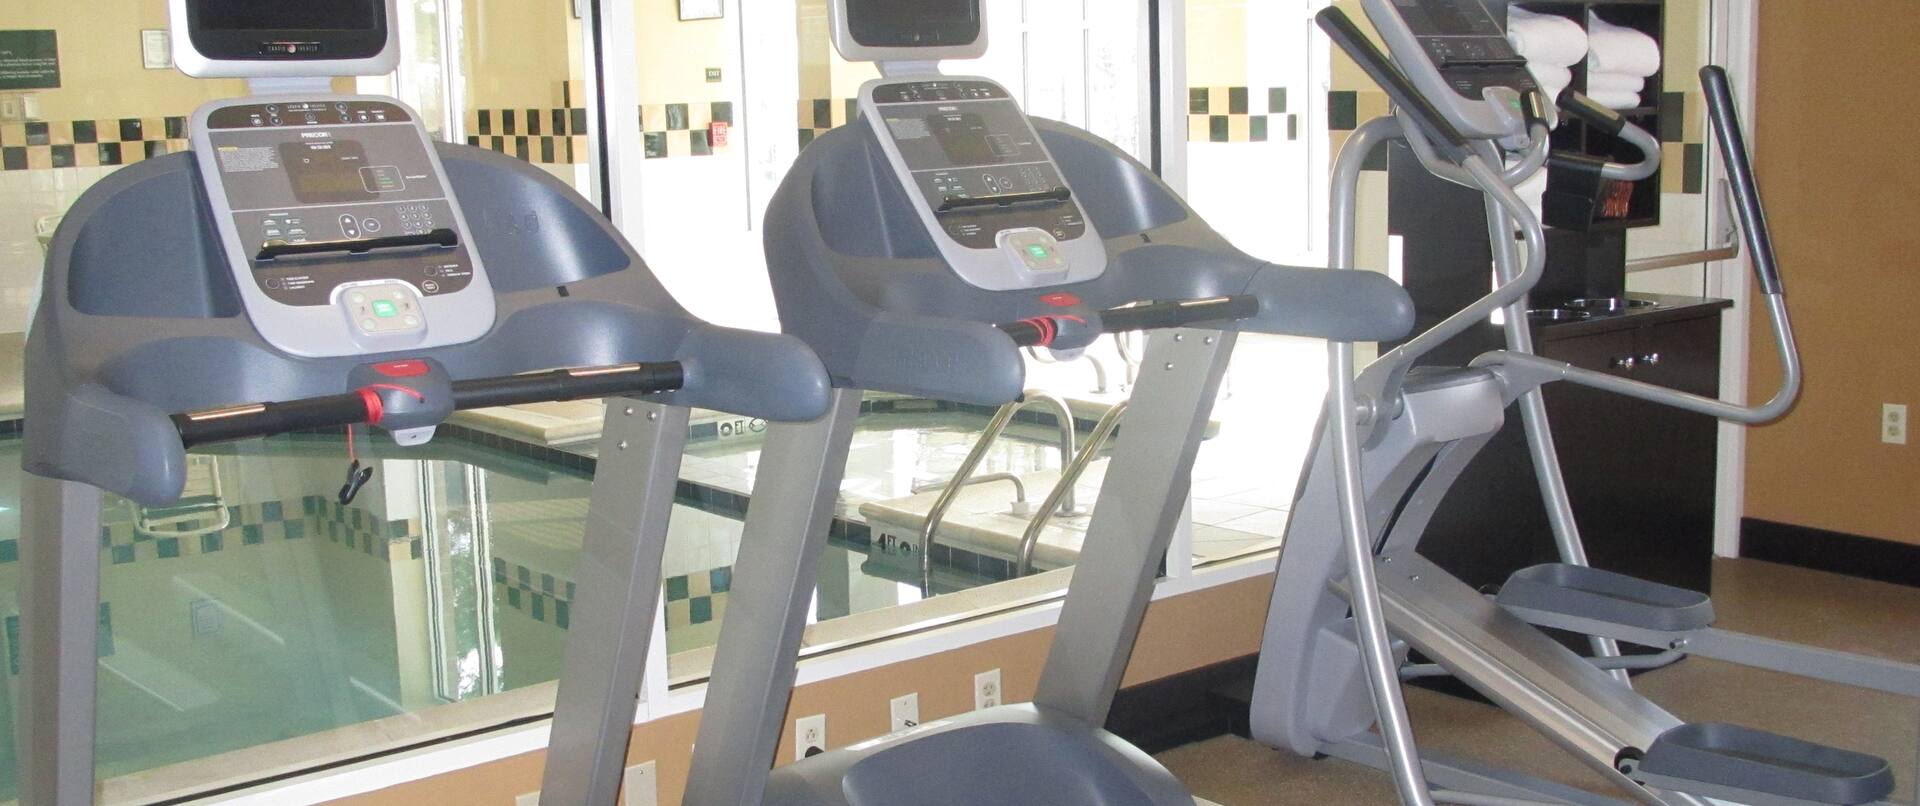 Fitness Center equipment